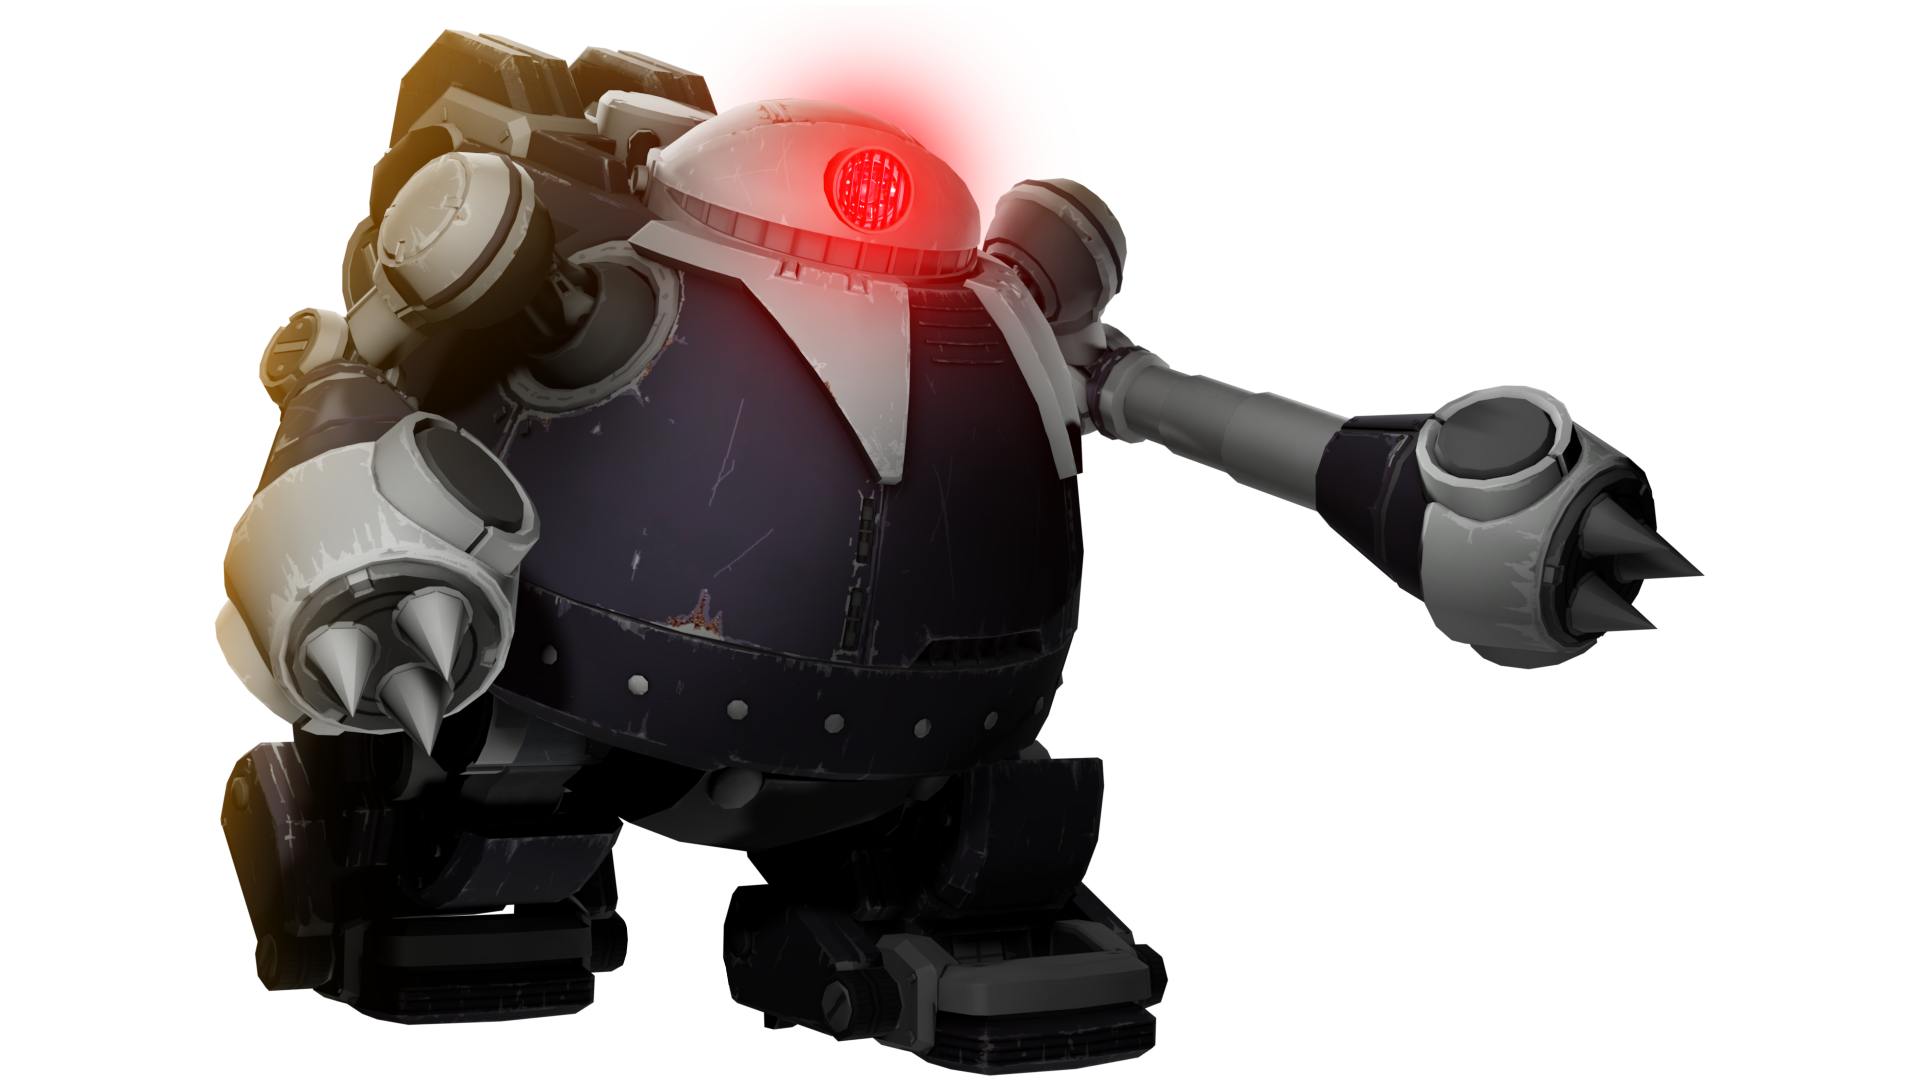 Blender ) Death Egg Robot Sentinel by HGBD-WolfBeliever5 on DeviantArt